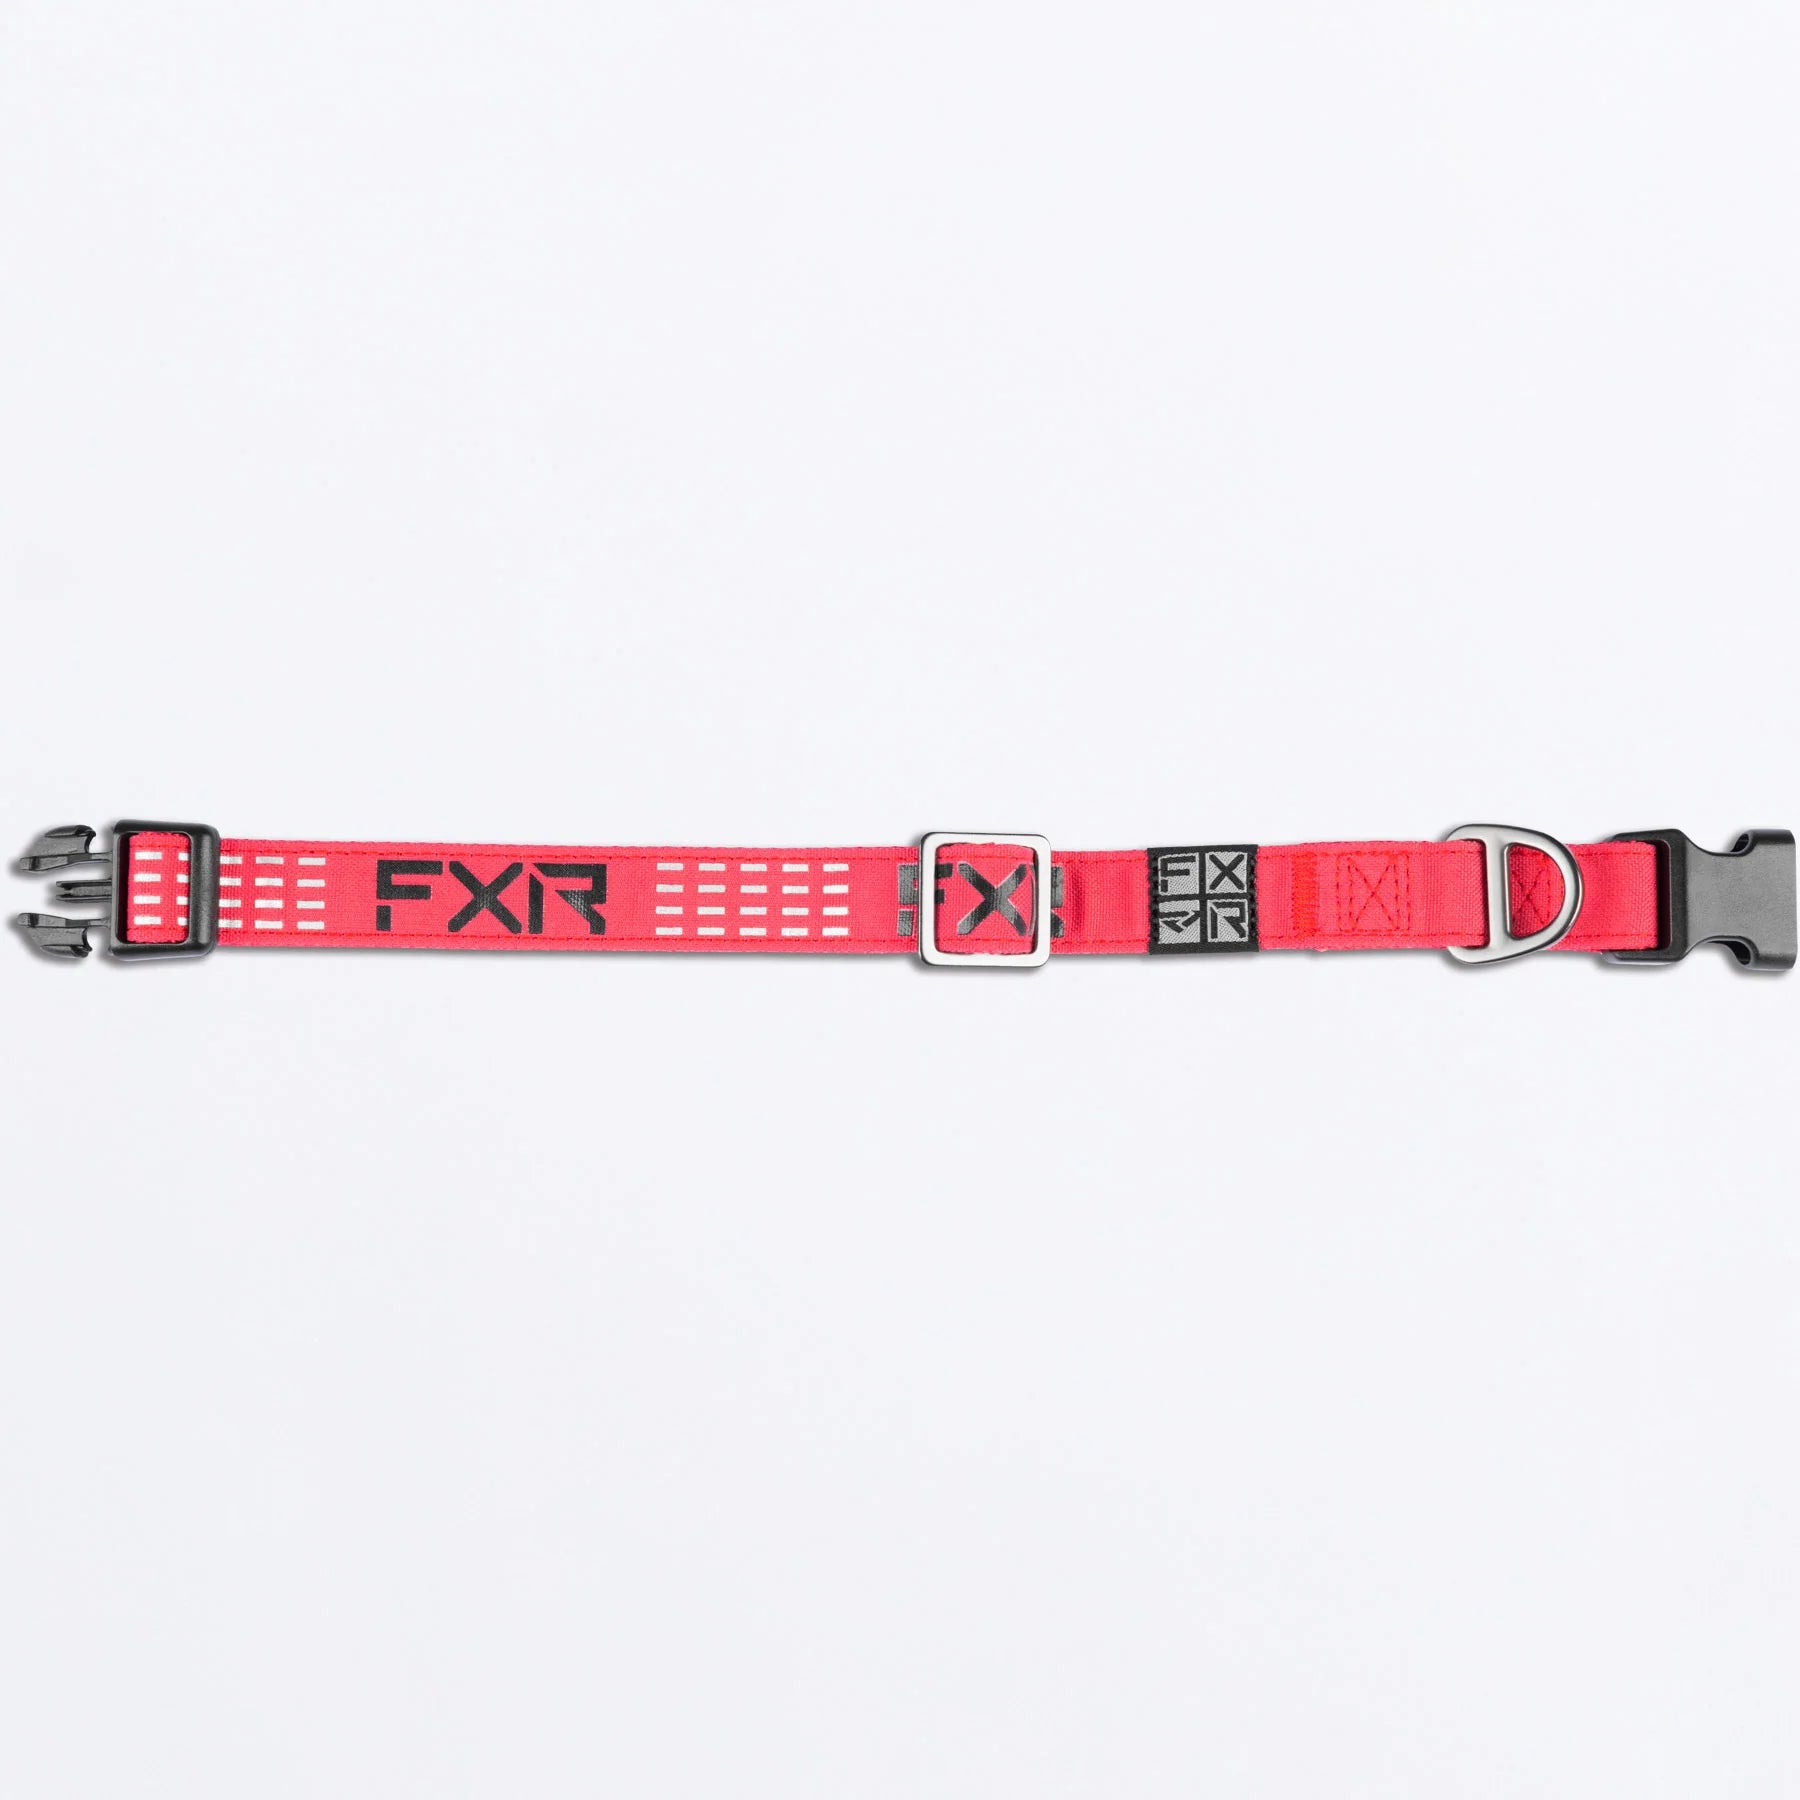 FXR Dog Collar Razz/Black